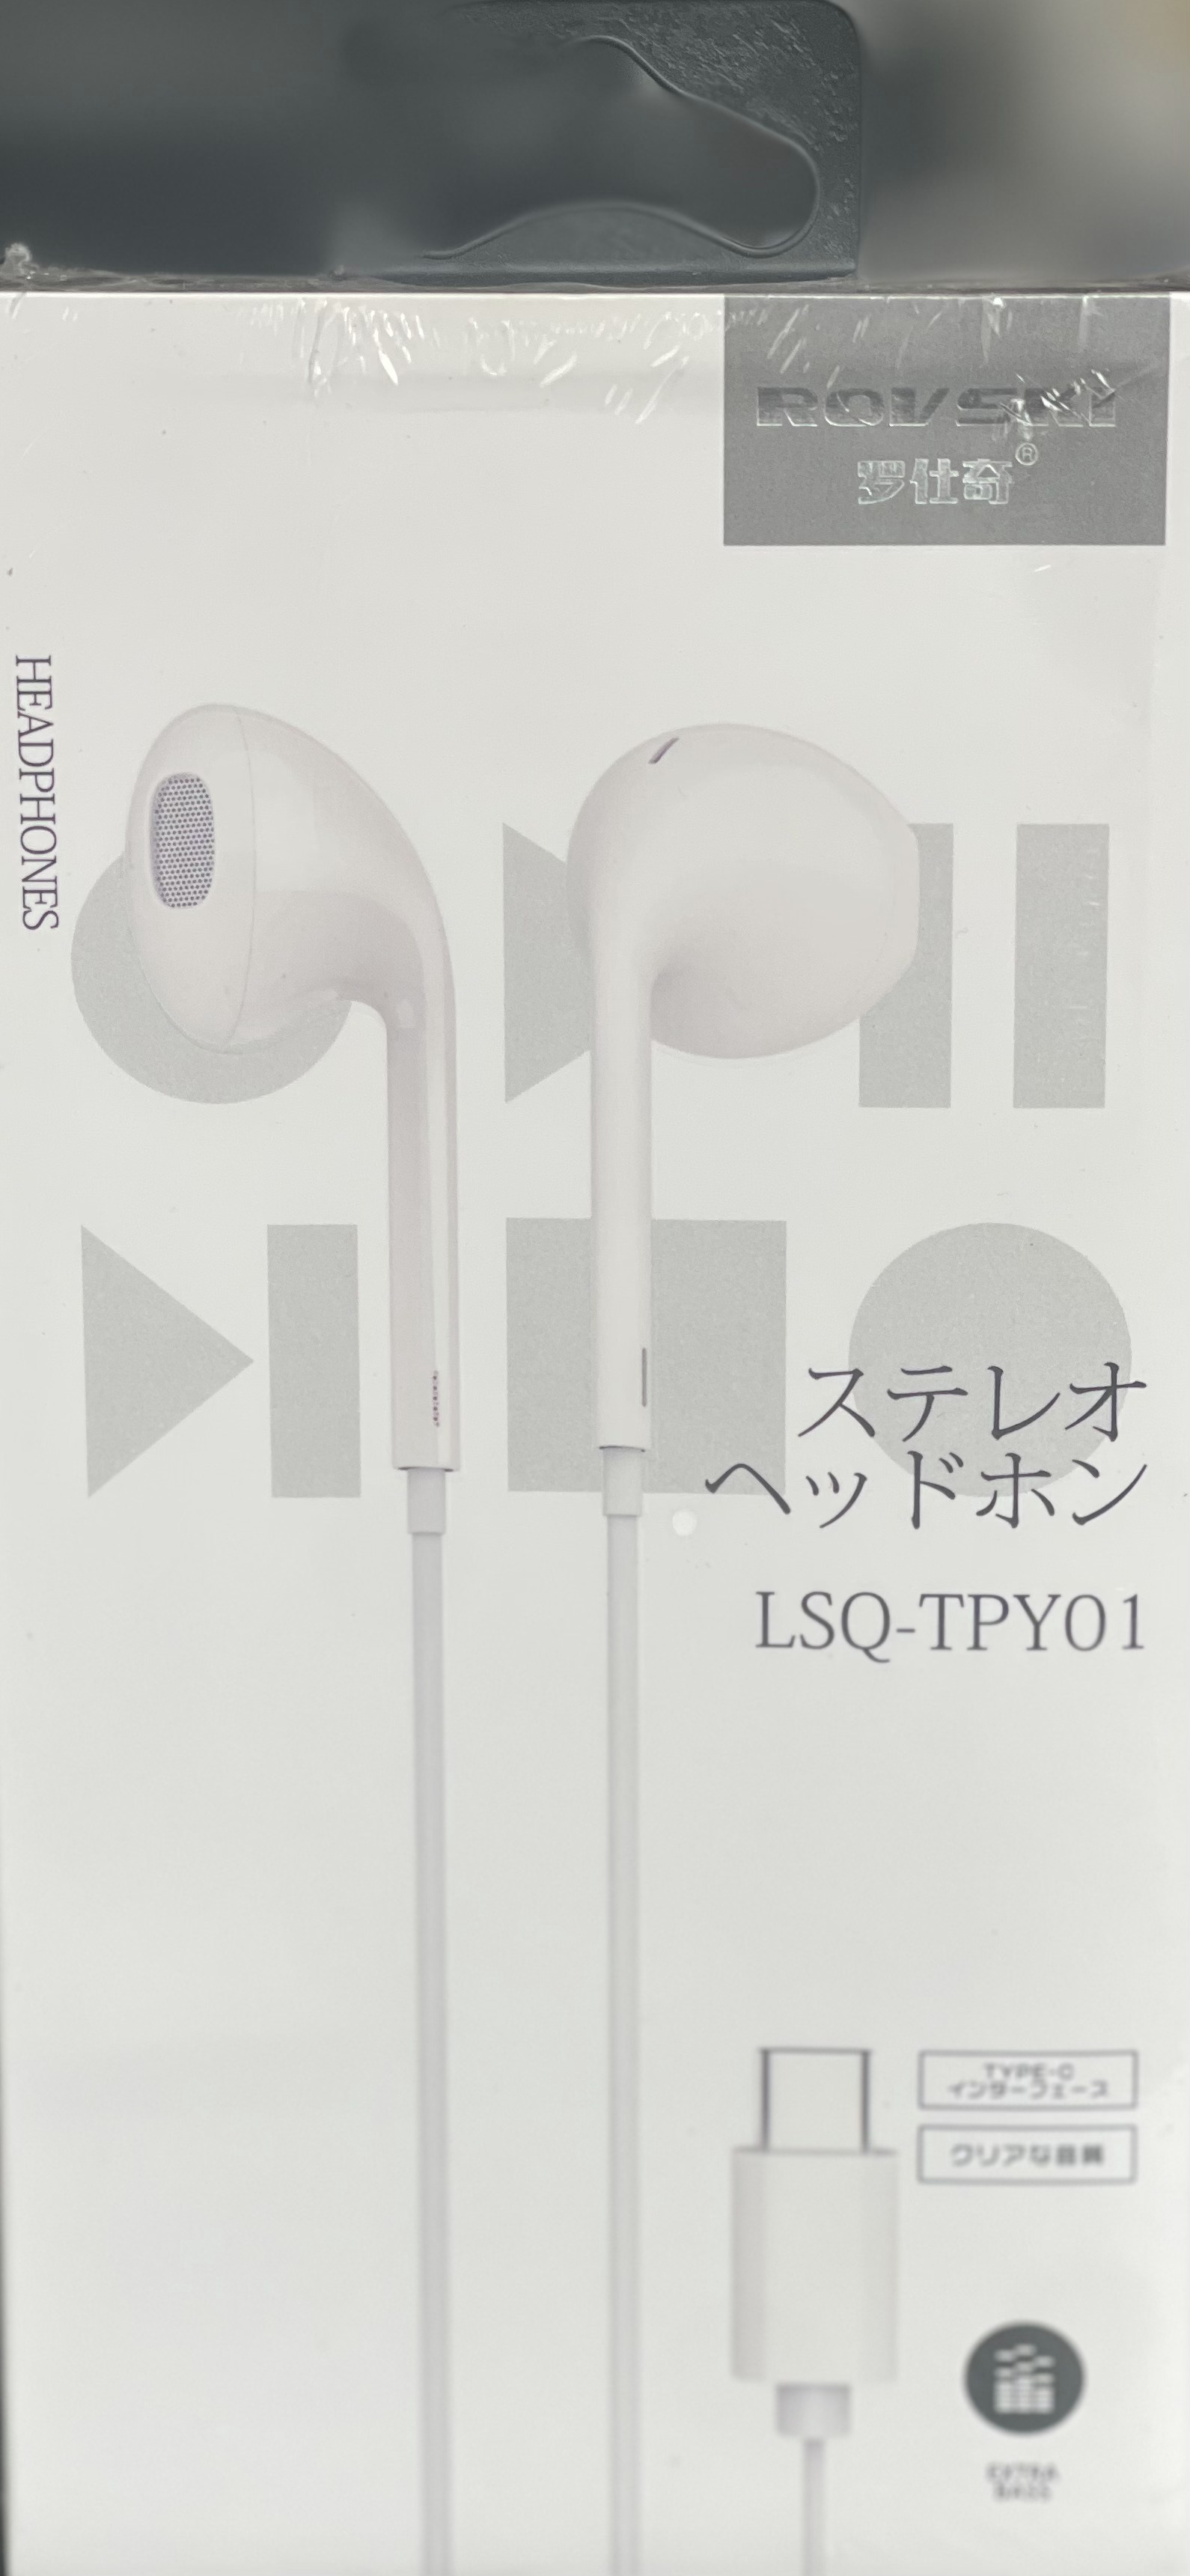 Rovski LSQ-TPY Type C Wired Headphone